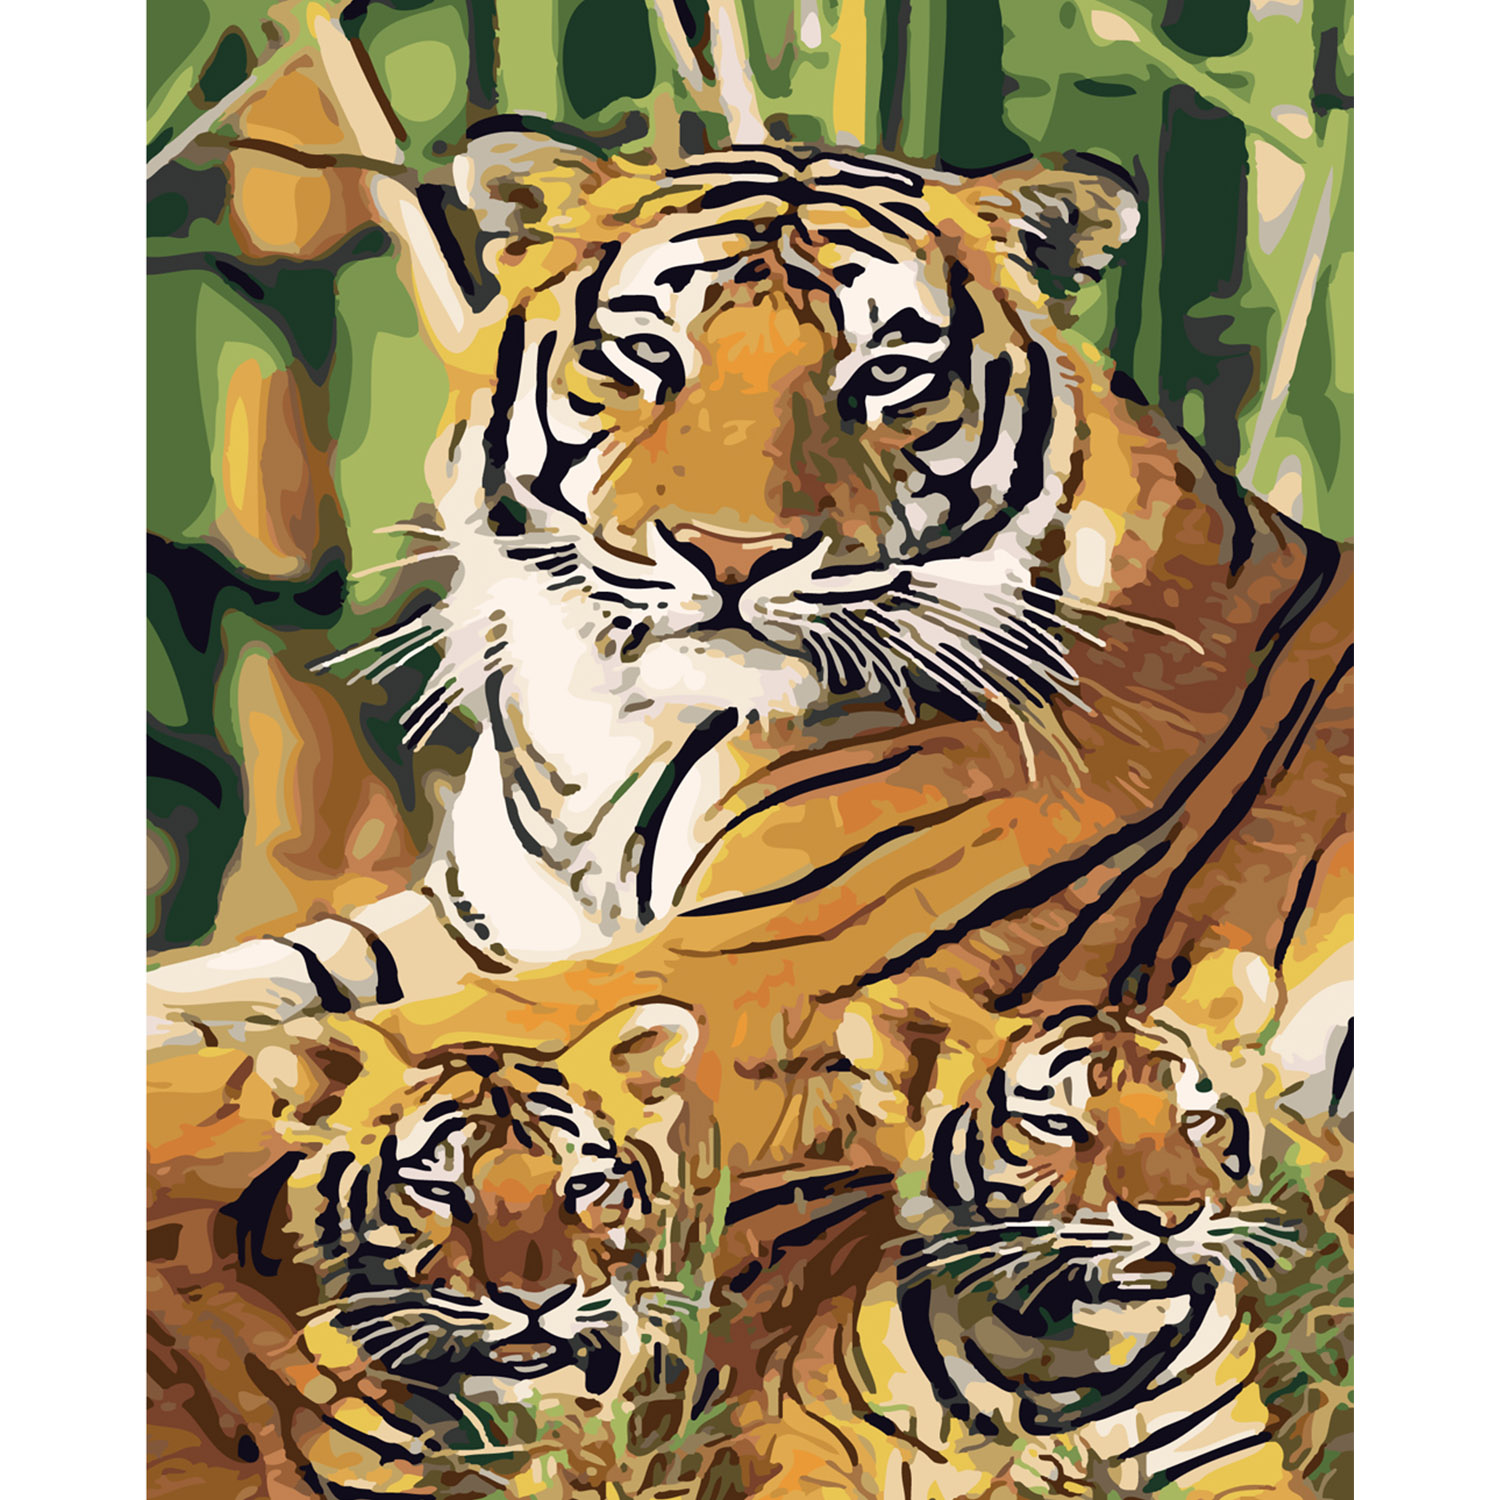 Malen nach Zahlen Strateg PREMIUM Tiger unter Bambus mit Lackgröße 40x50 cm SY6332